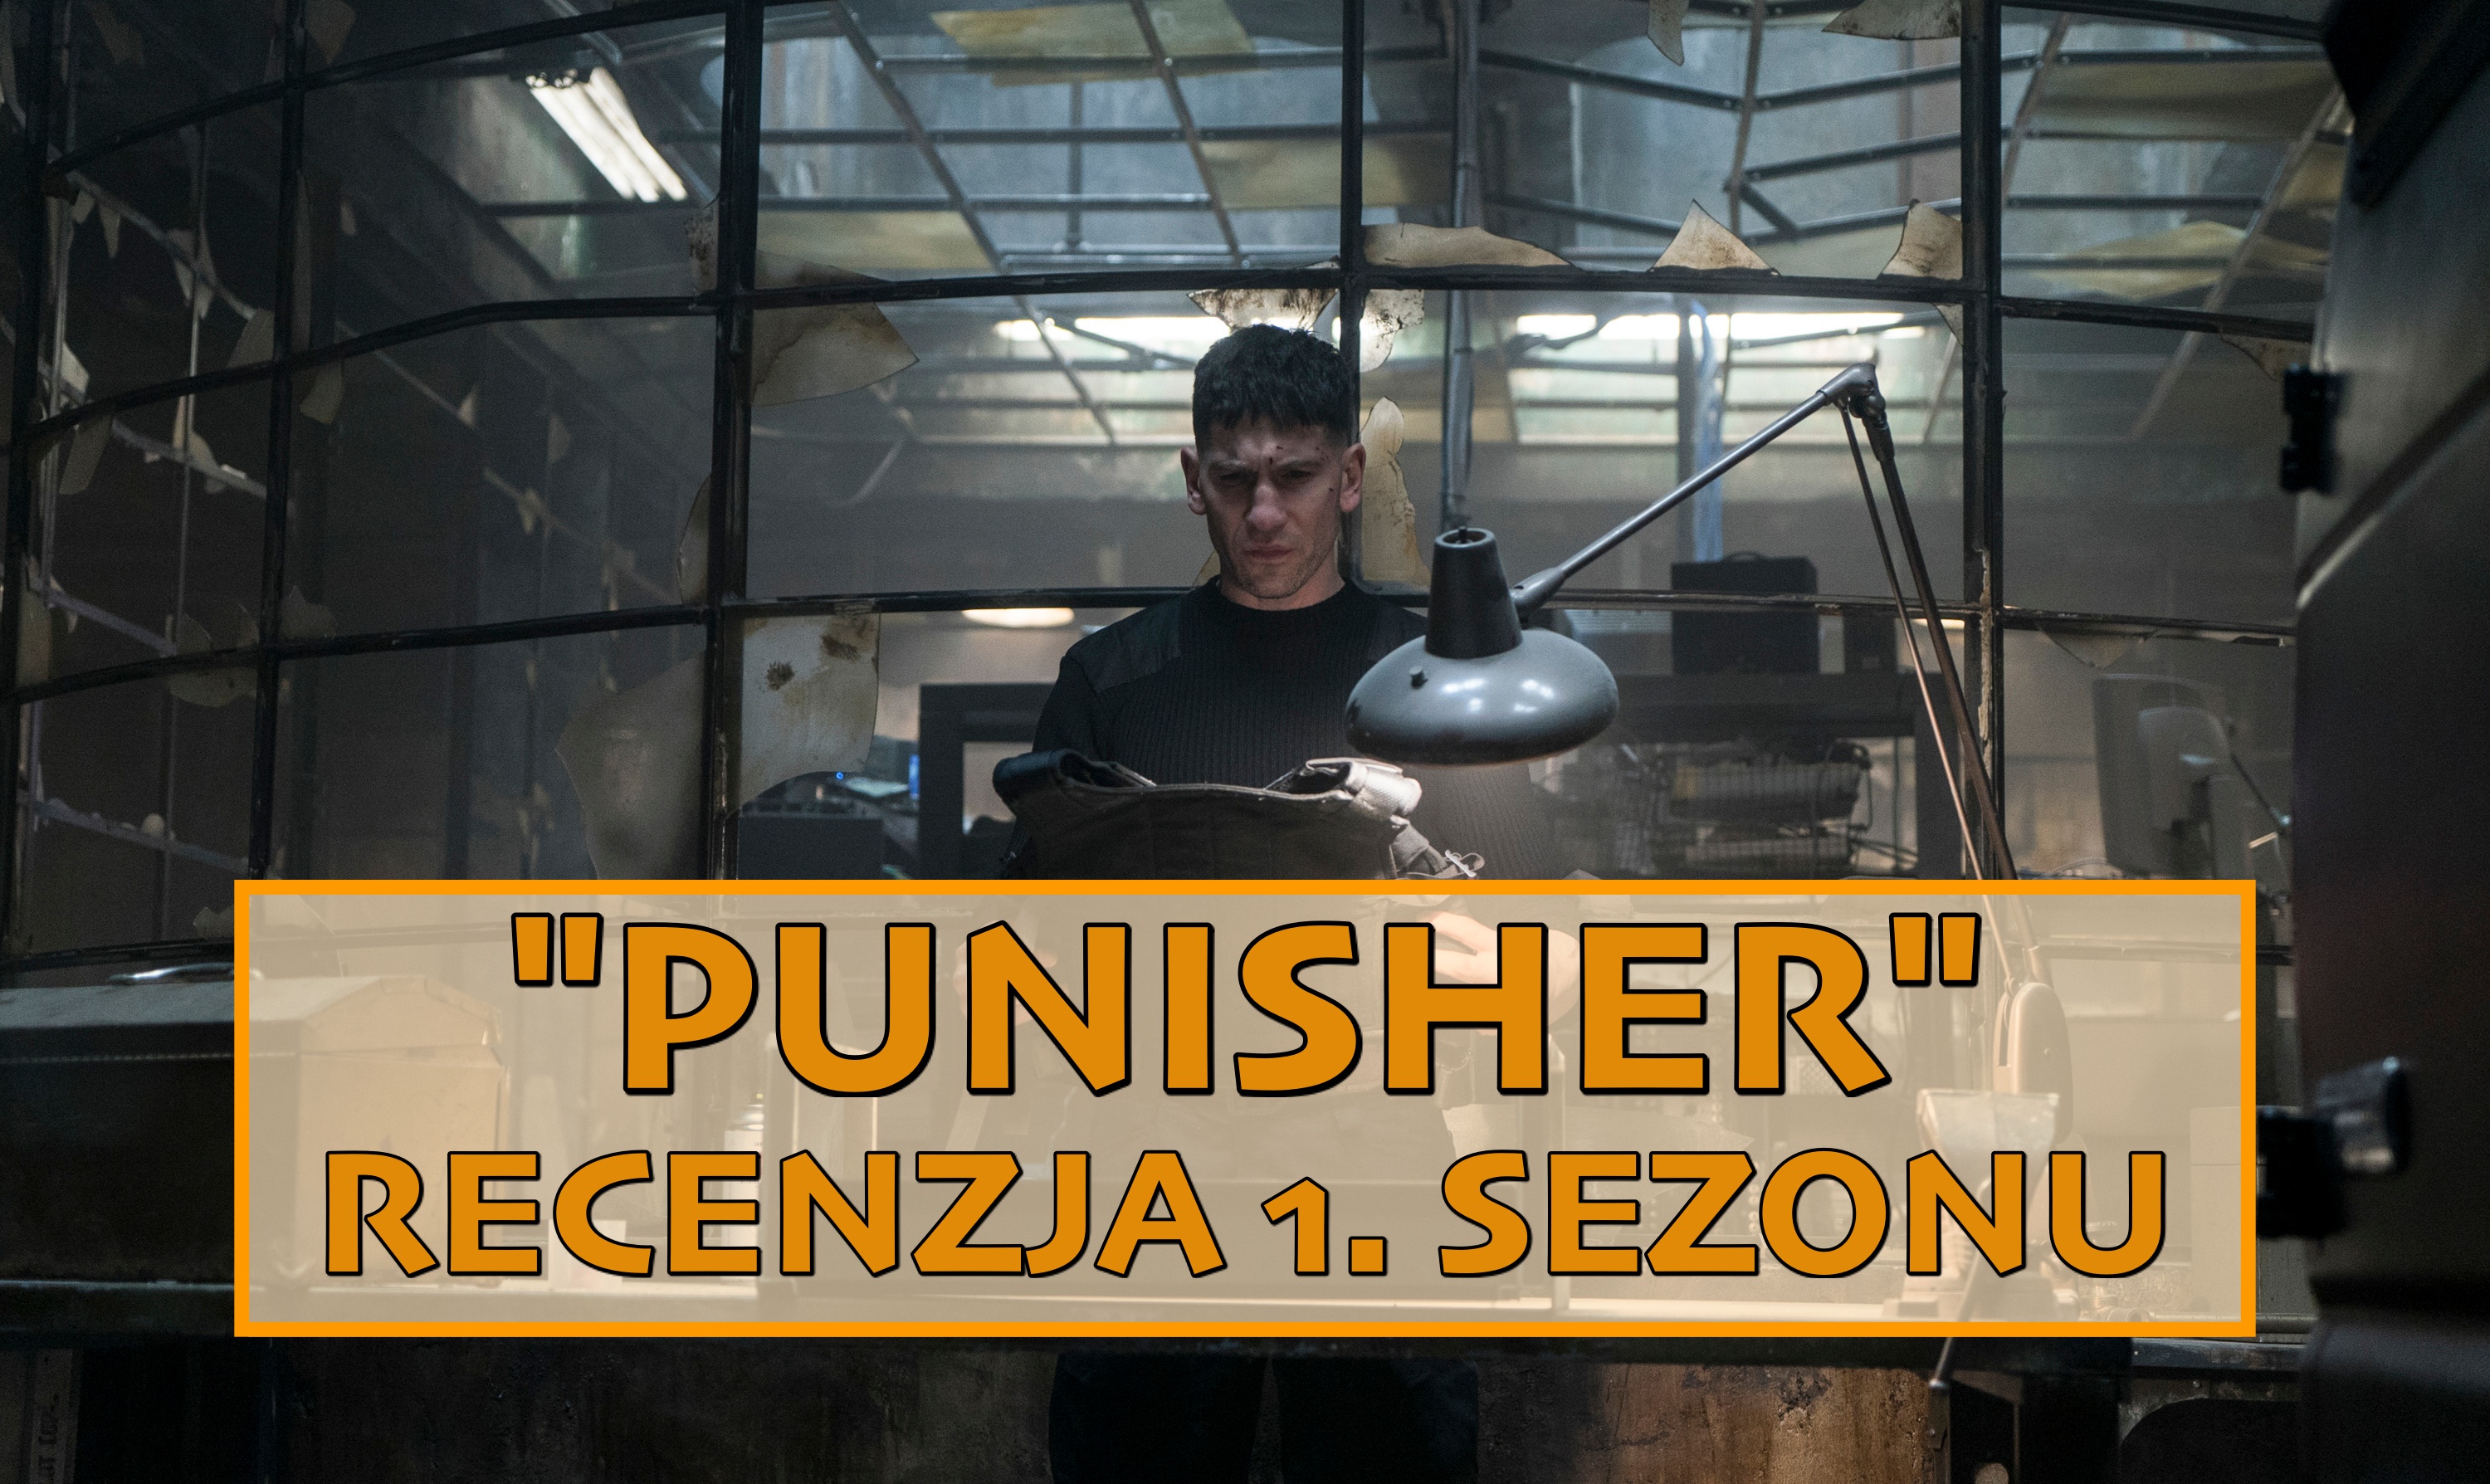 Kiedy supermoc to tylko i aż przemoc – recenzja 1. sezonu „Punisher”